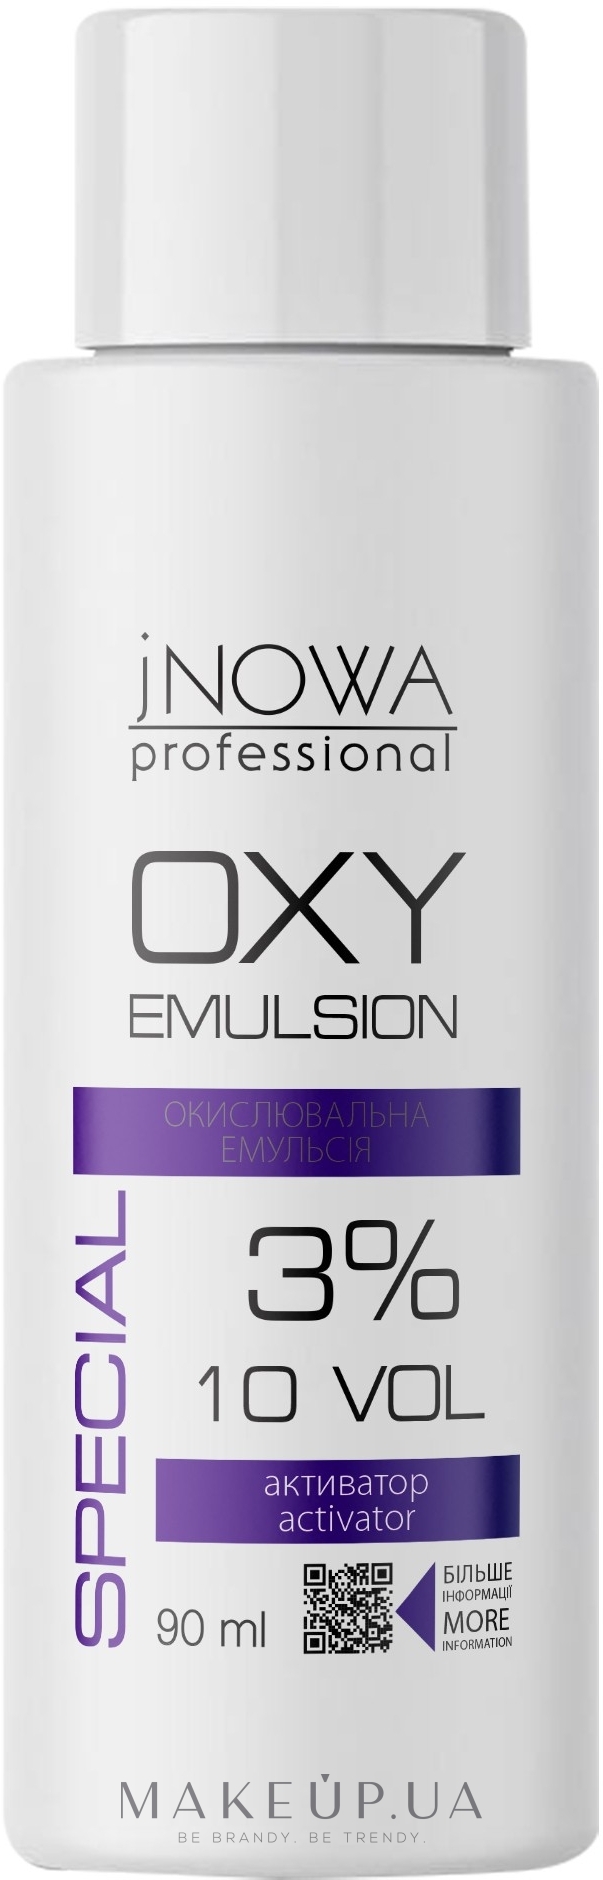 Окислювальна емульсія, 3 % - jNOWA Professional OXY 3% (10 vol) — фото 90ml